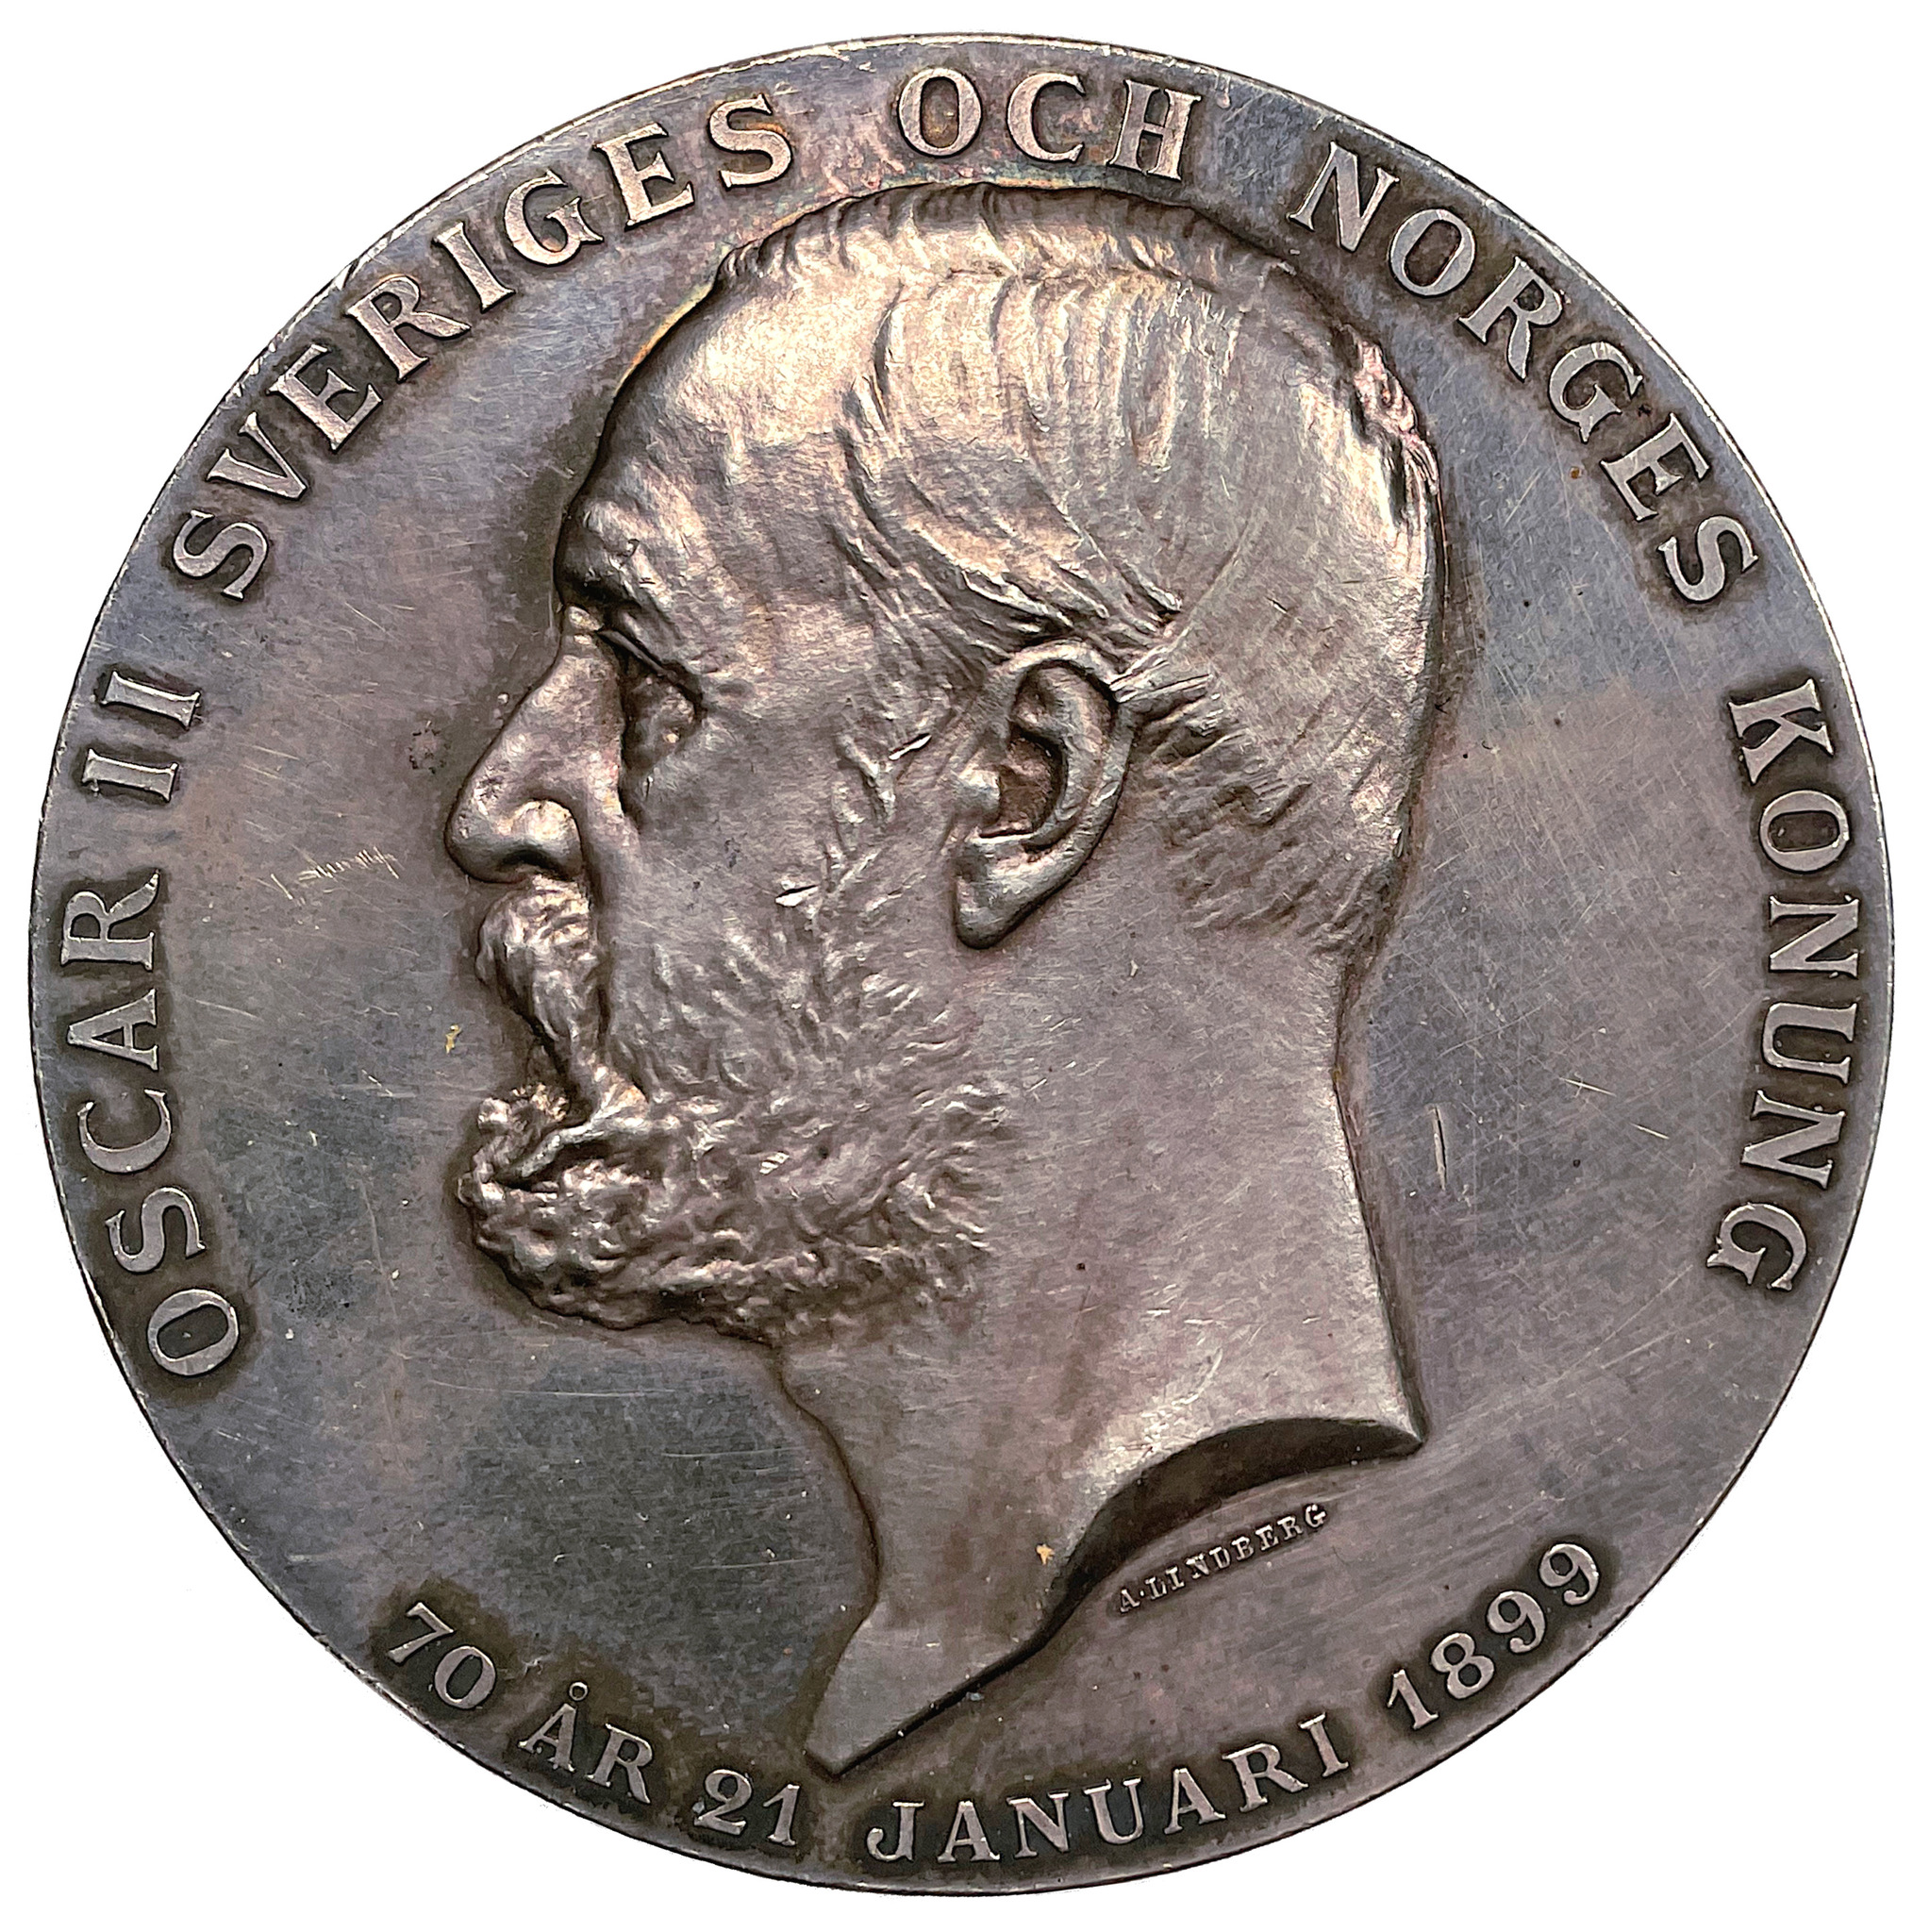 Oskar II 70 år den 21 januari 1899 - Den så kallade "Kalendermedaljen" i silver - Mycket sällsynt av Adolf Lindberg